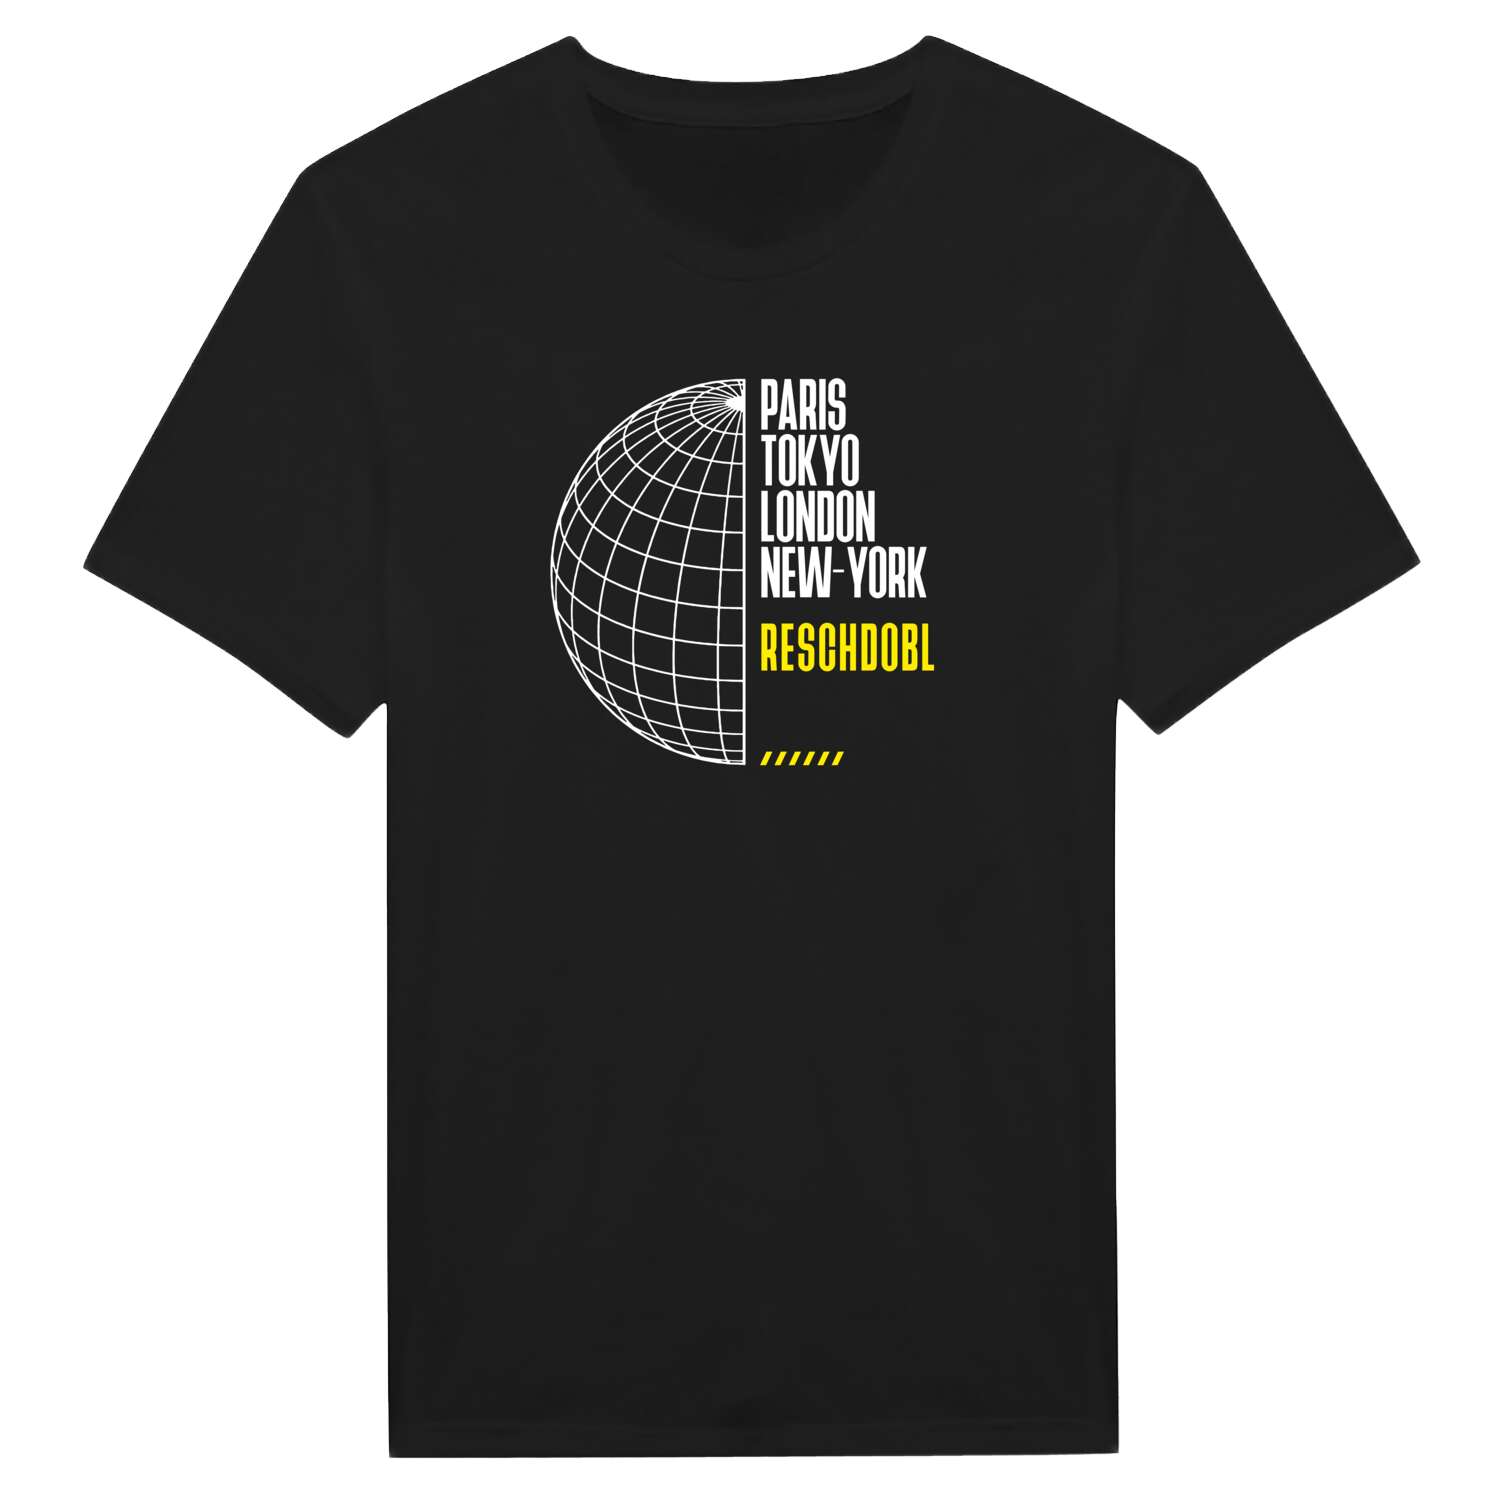 Reschdobl T-Shirt »Paris Tokyo London«